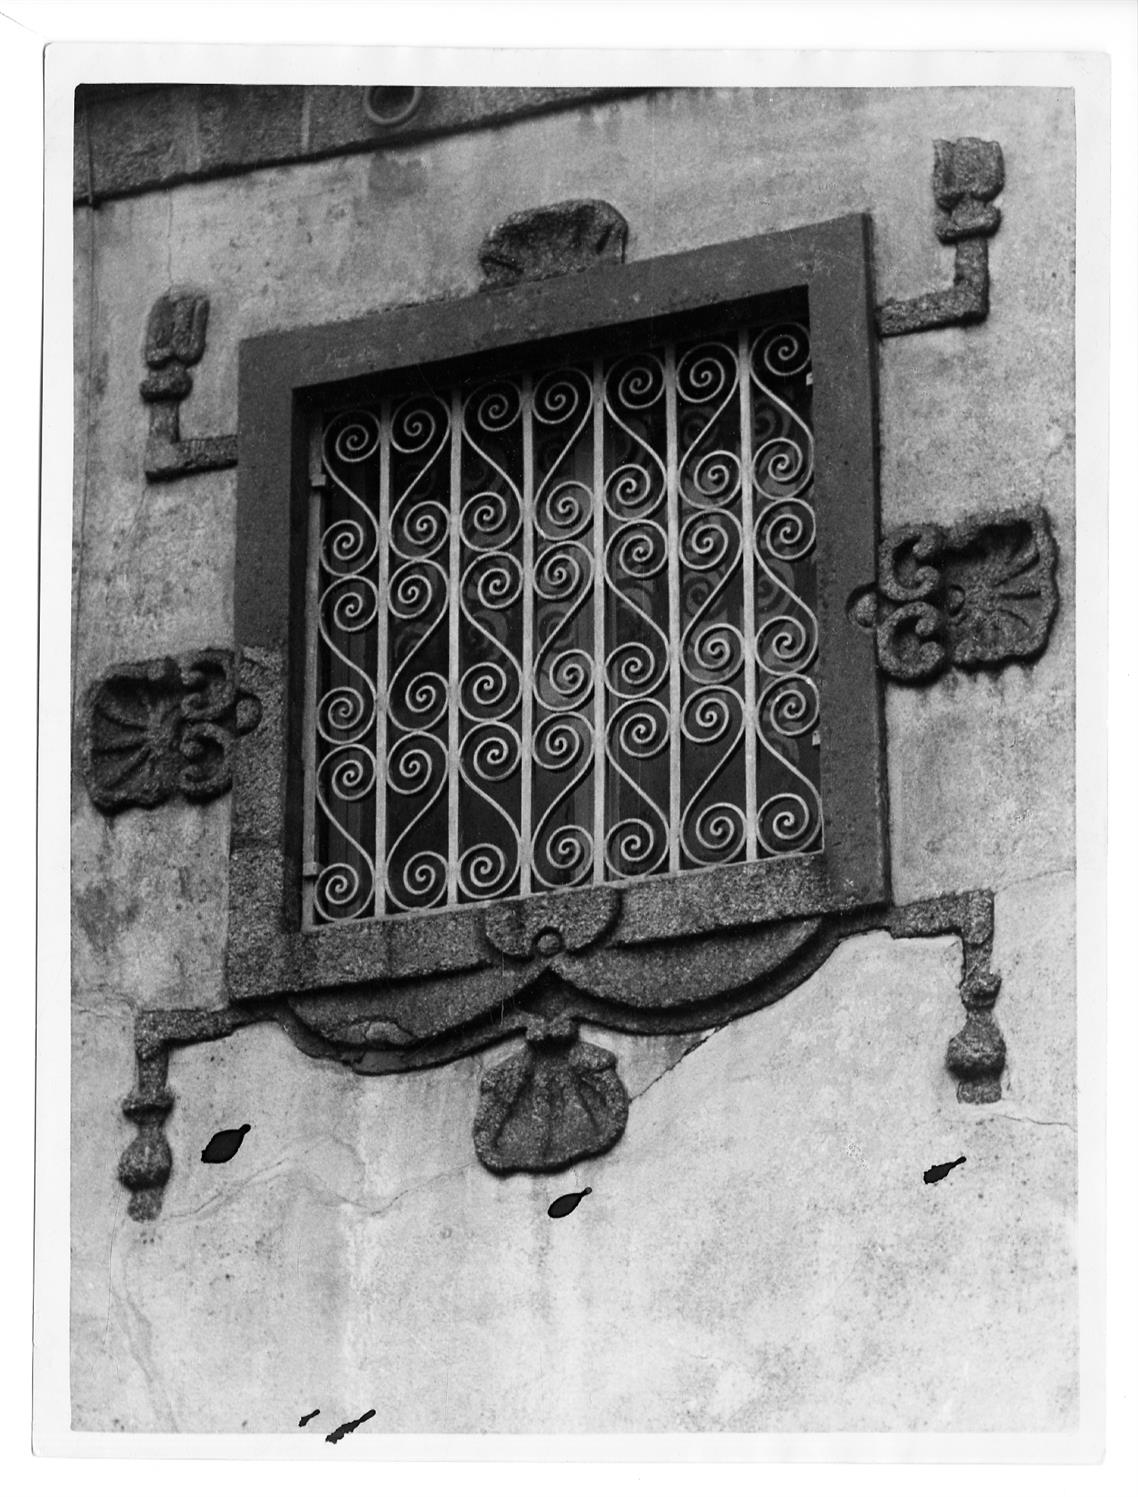 Aspectos arqueológicos e artísticos da cidade do Porto : janela da casa n.º 49 da travessa de Santa Clara